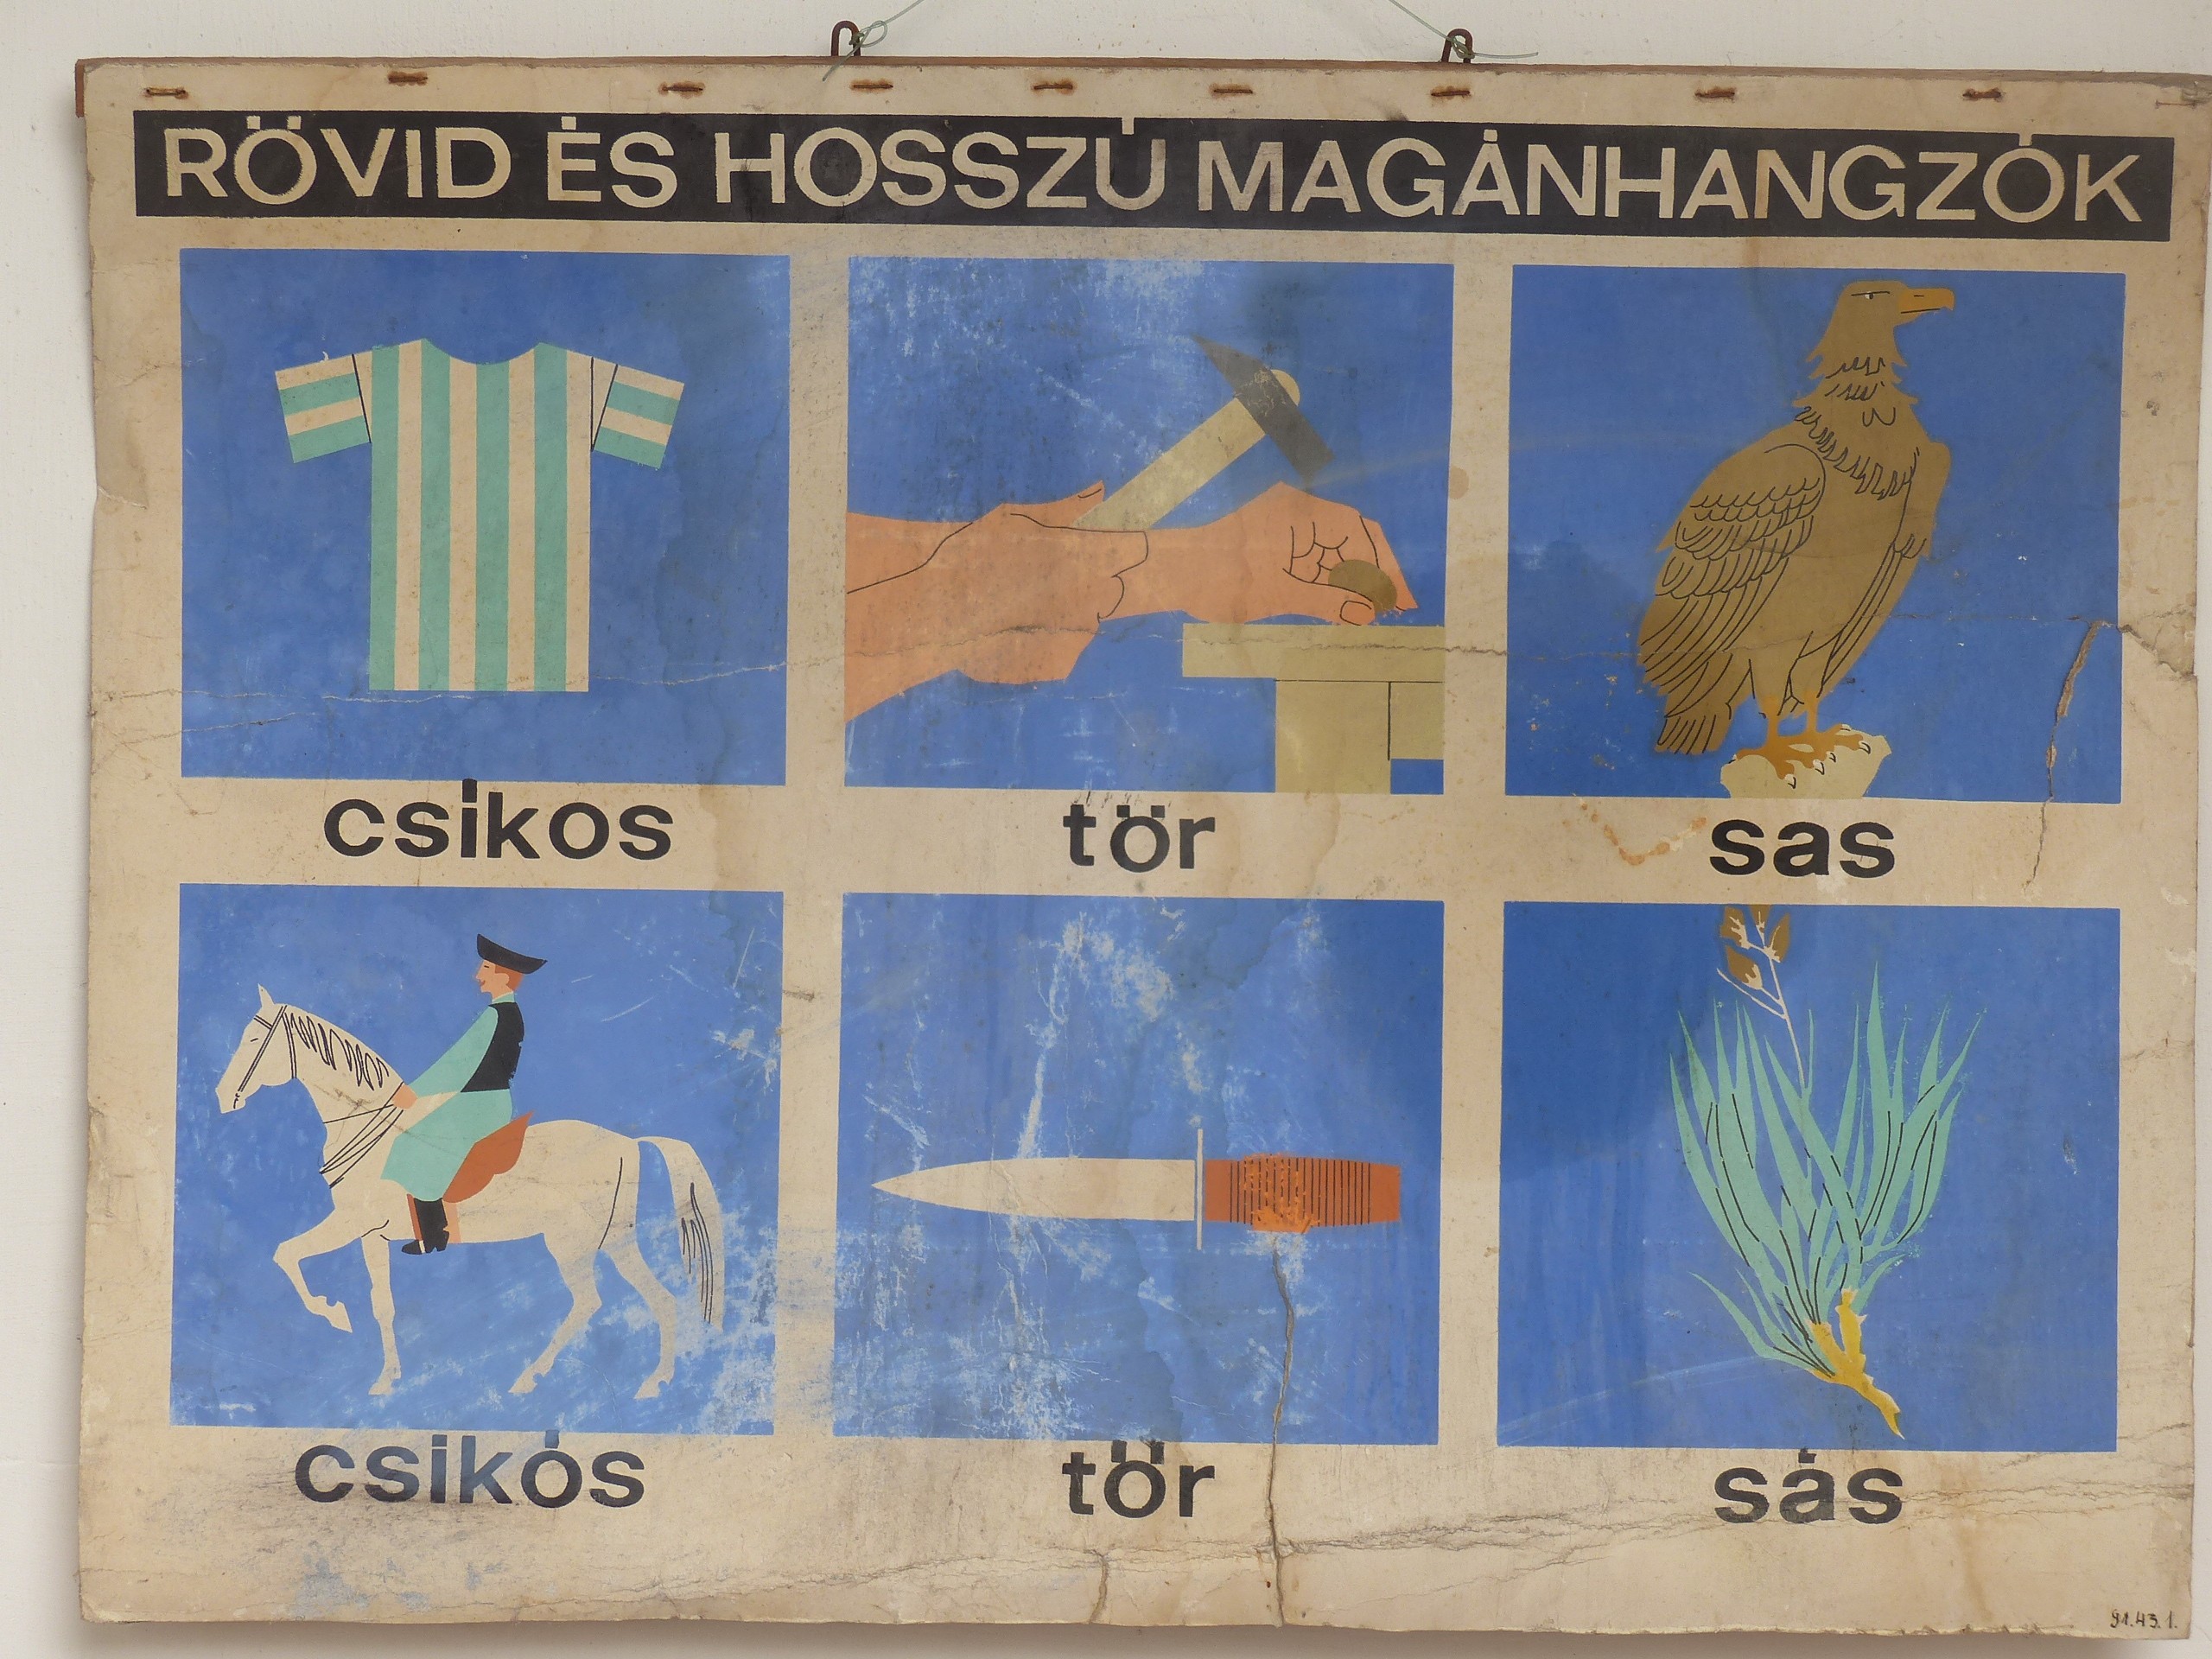 Helyesírási falikép a hosszú és rövid magánhangzókról (Tapolcai Városi Múzeum CC BY-NC-SA)